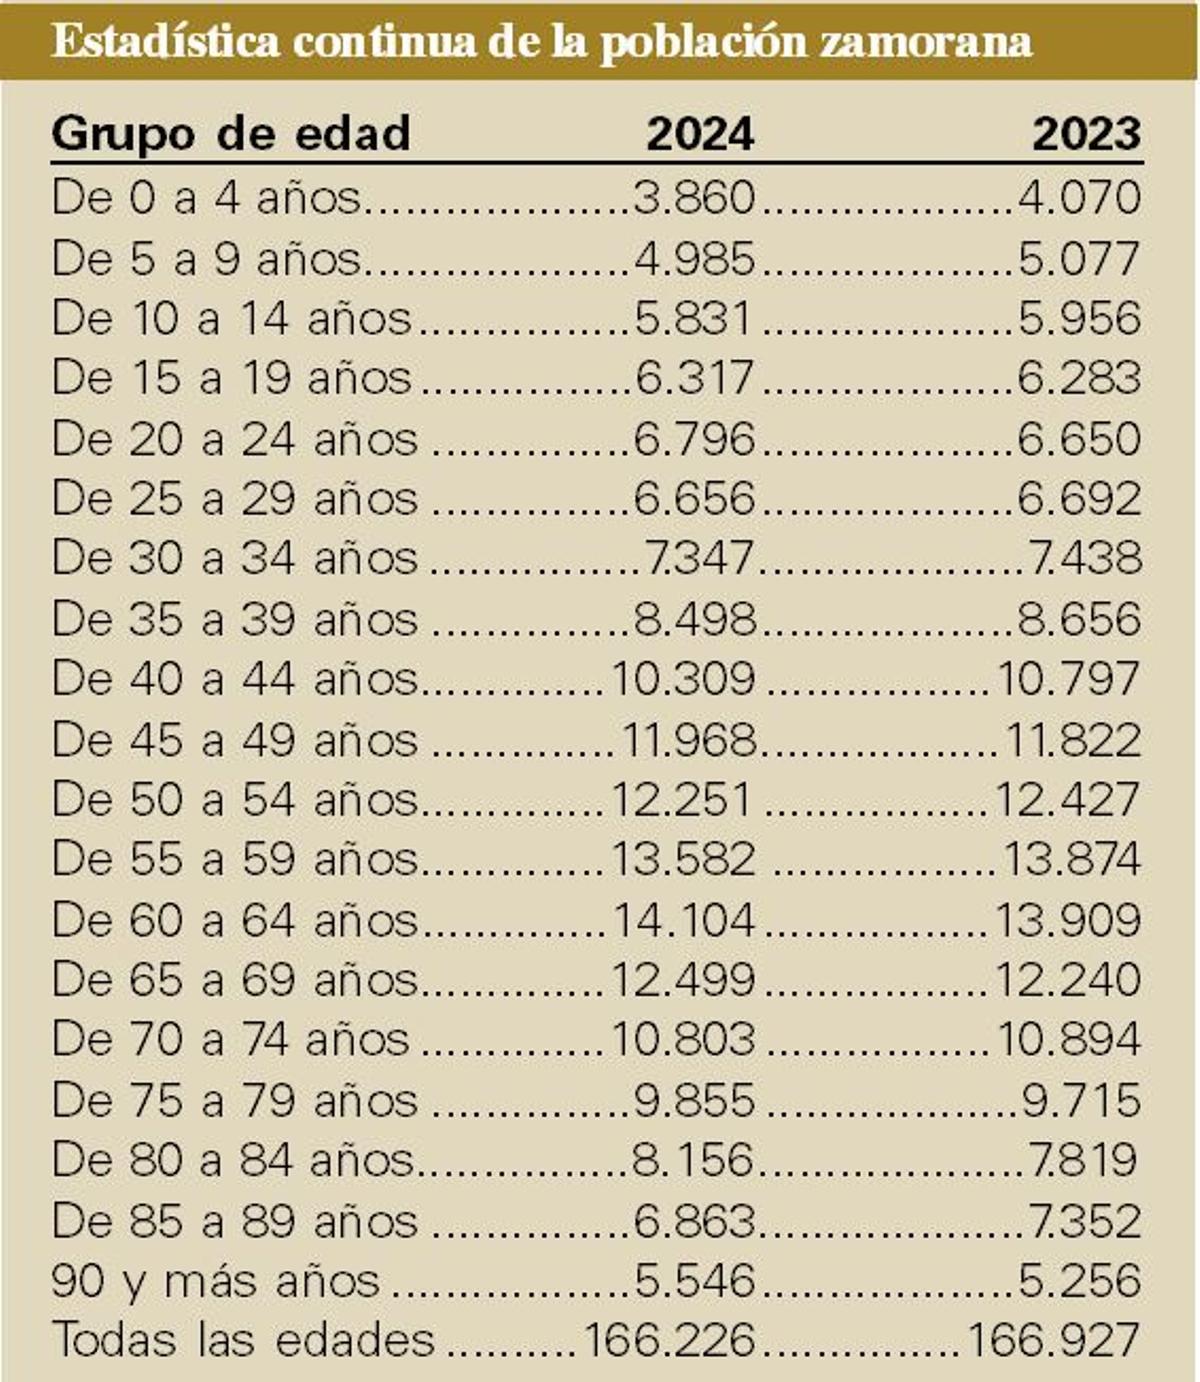 Población zamorana a 1 de enero de 2023 y de 2024.